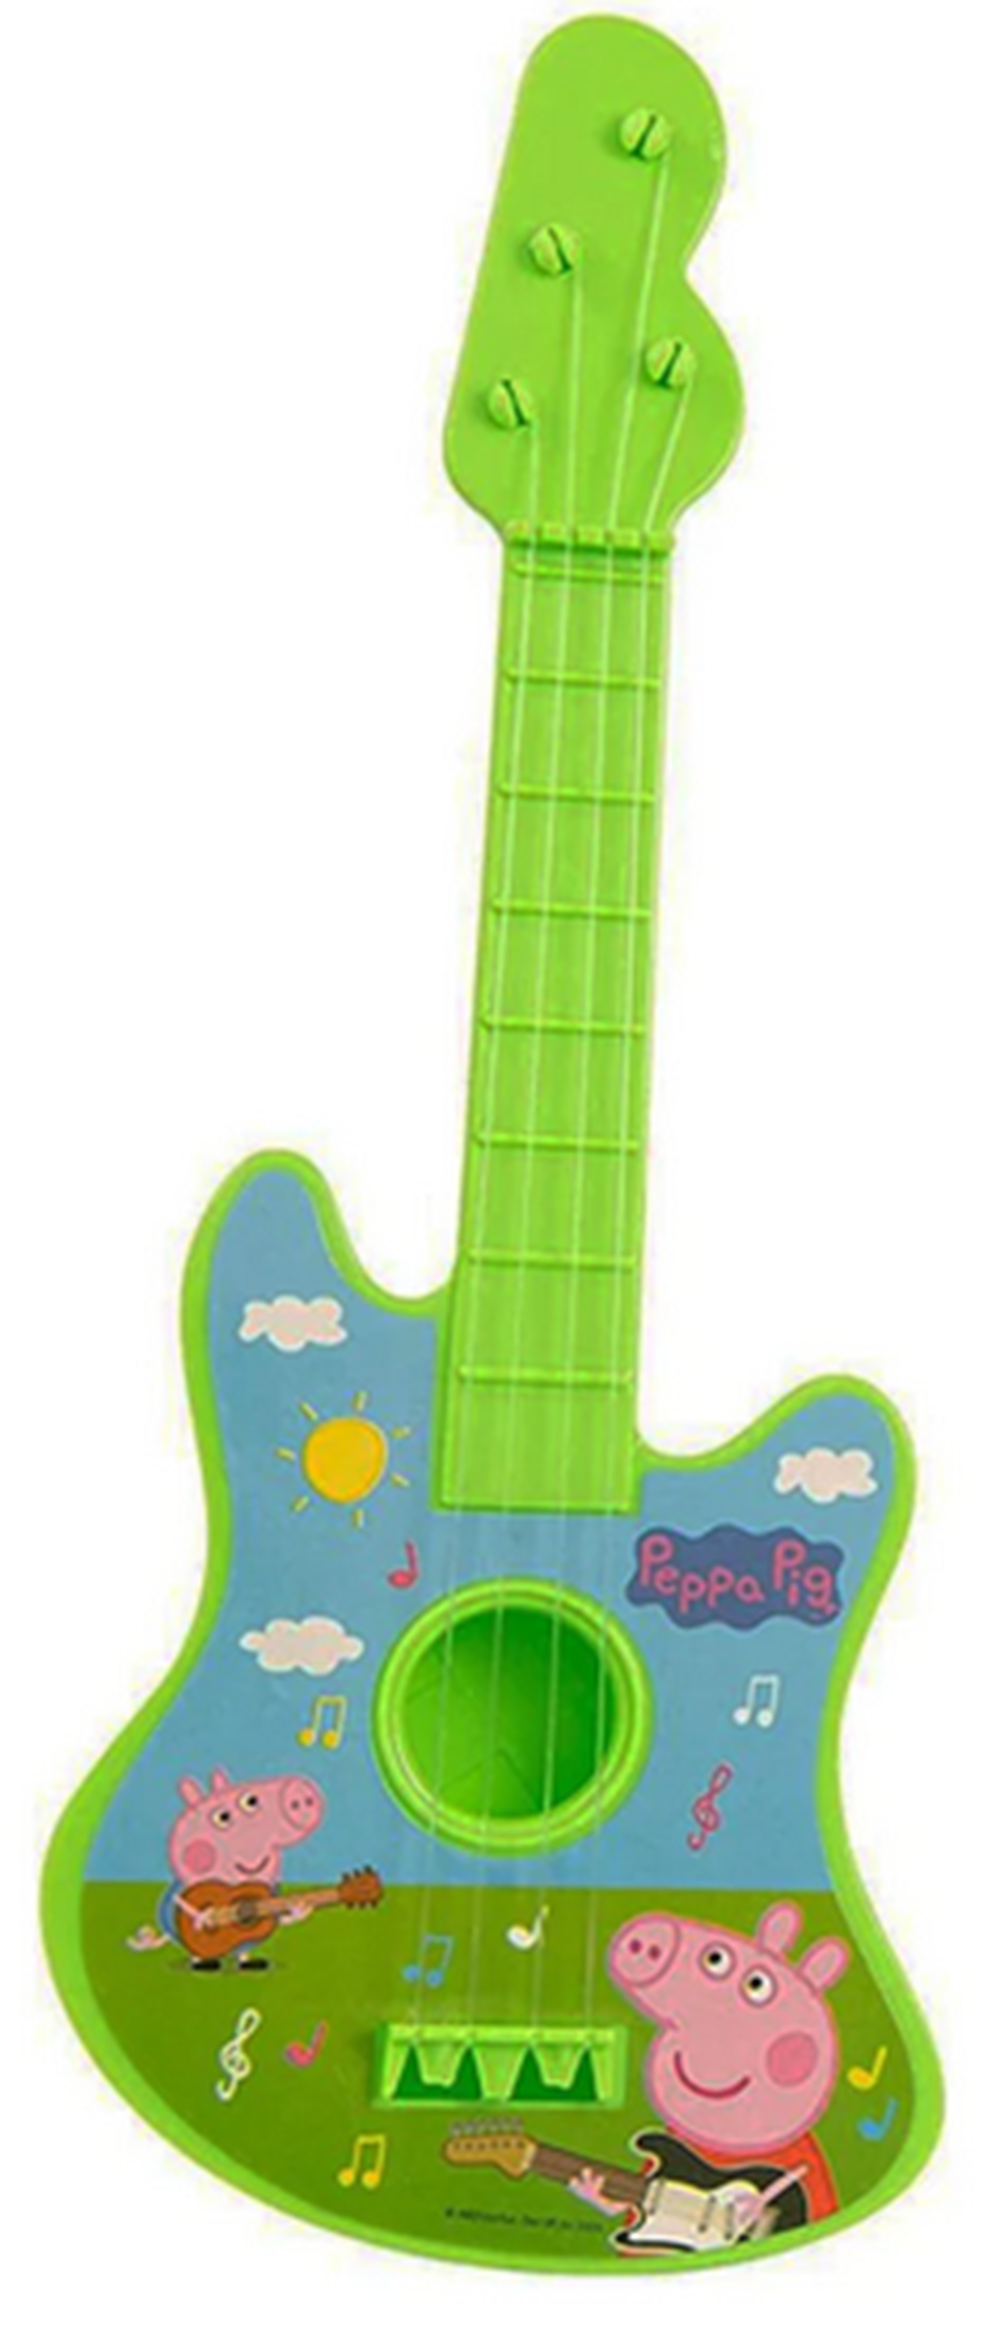 HTI Peppa Pig Guitar